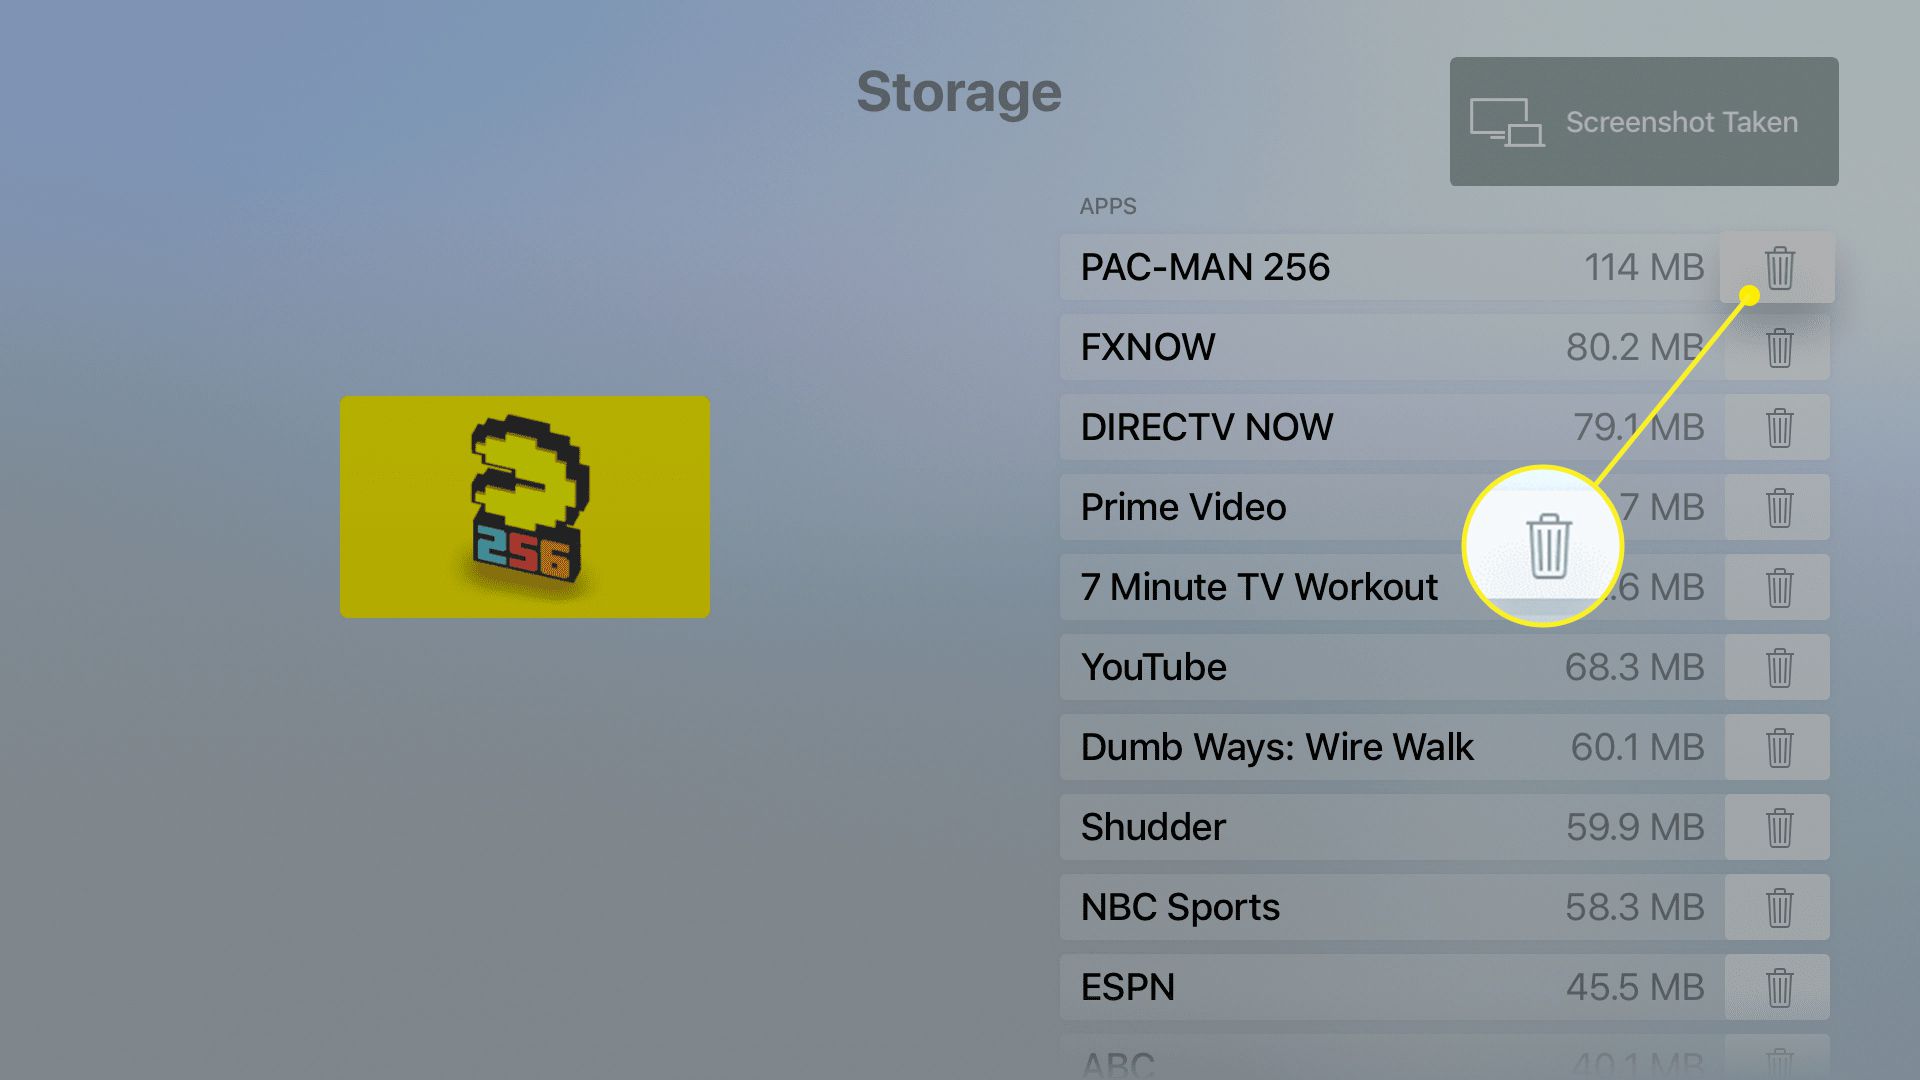 Apple TV-opslagscherm met app-lijst en hoeveelheden opslagruimte